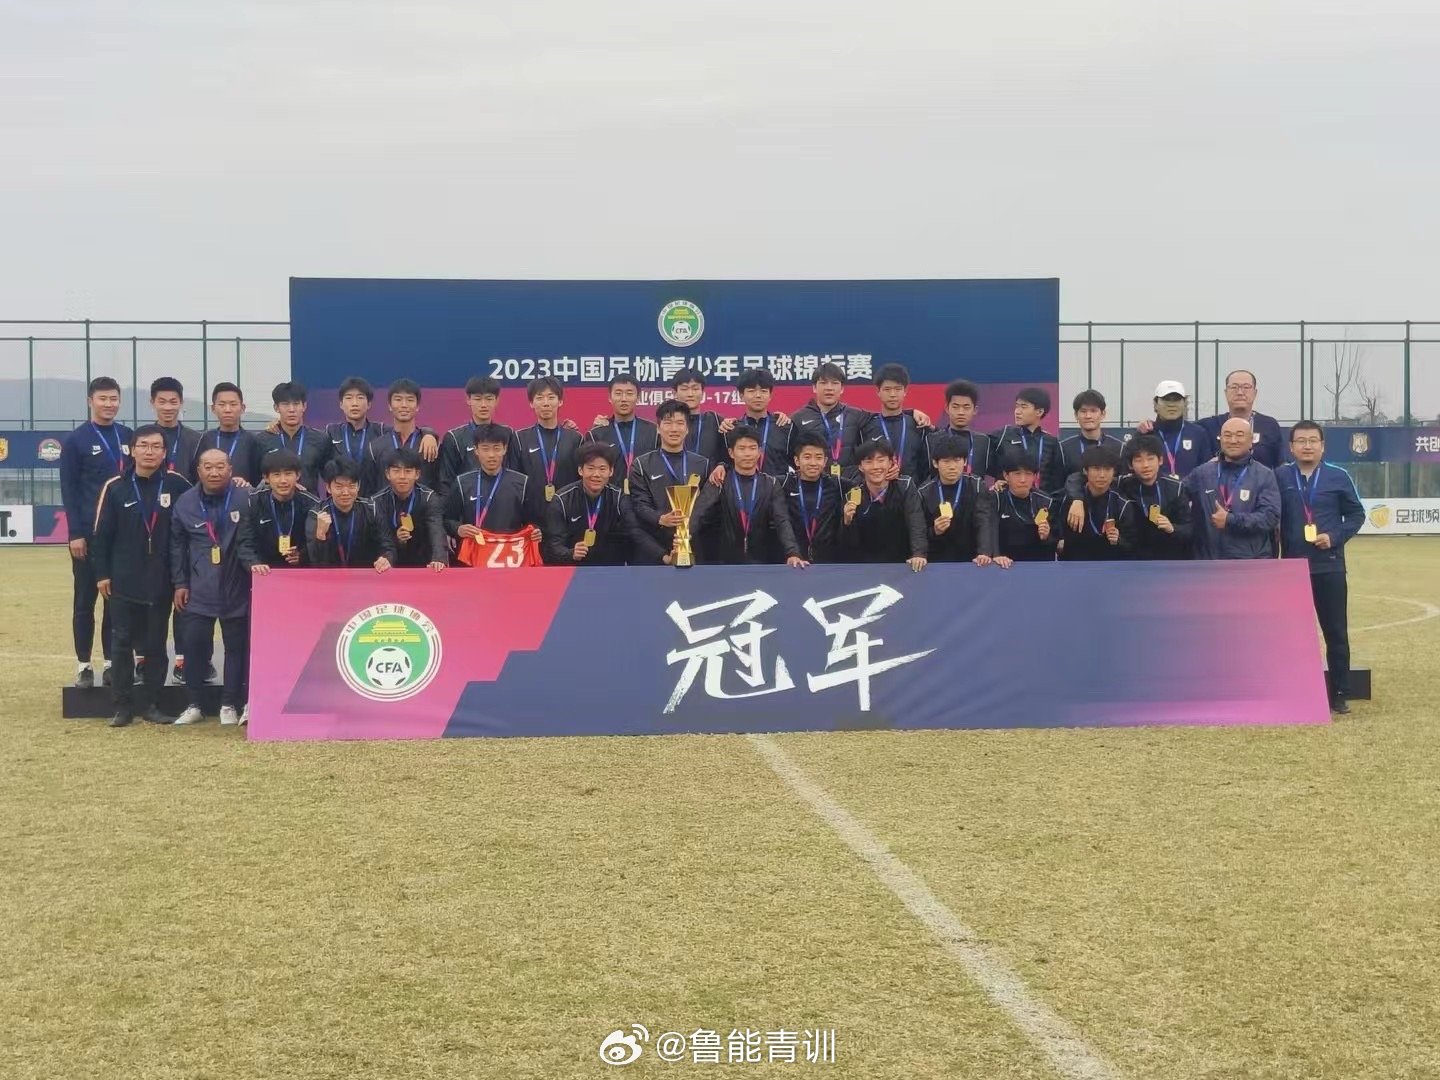 祝贺泰山小将们获得2023中国足协青少年足球锦标赛冠军?